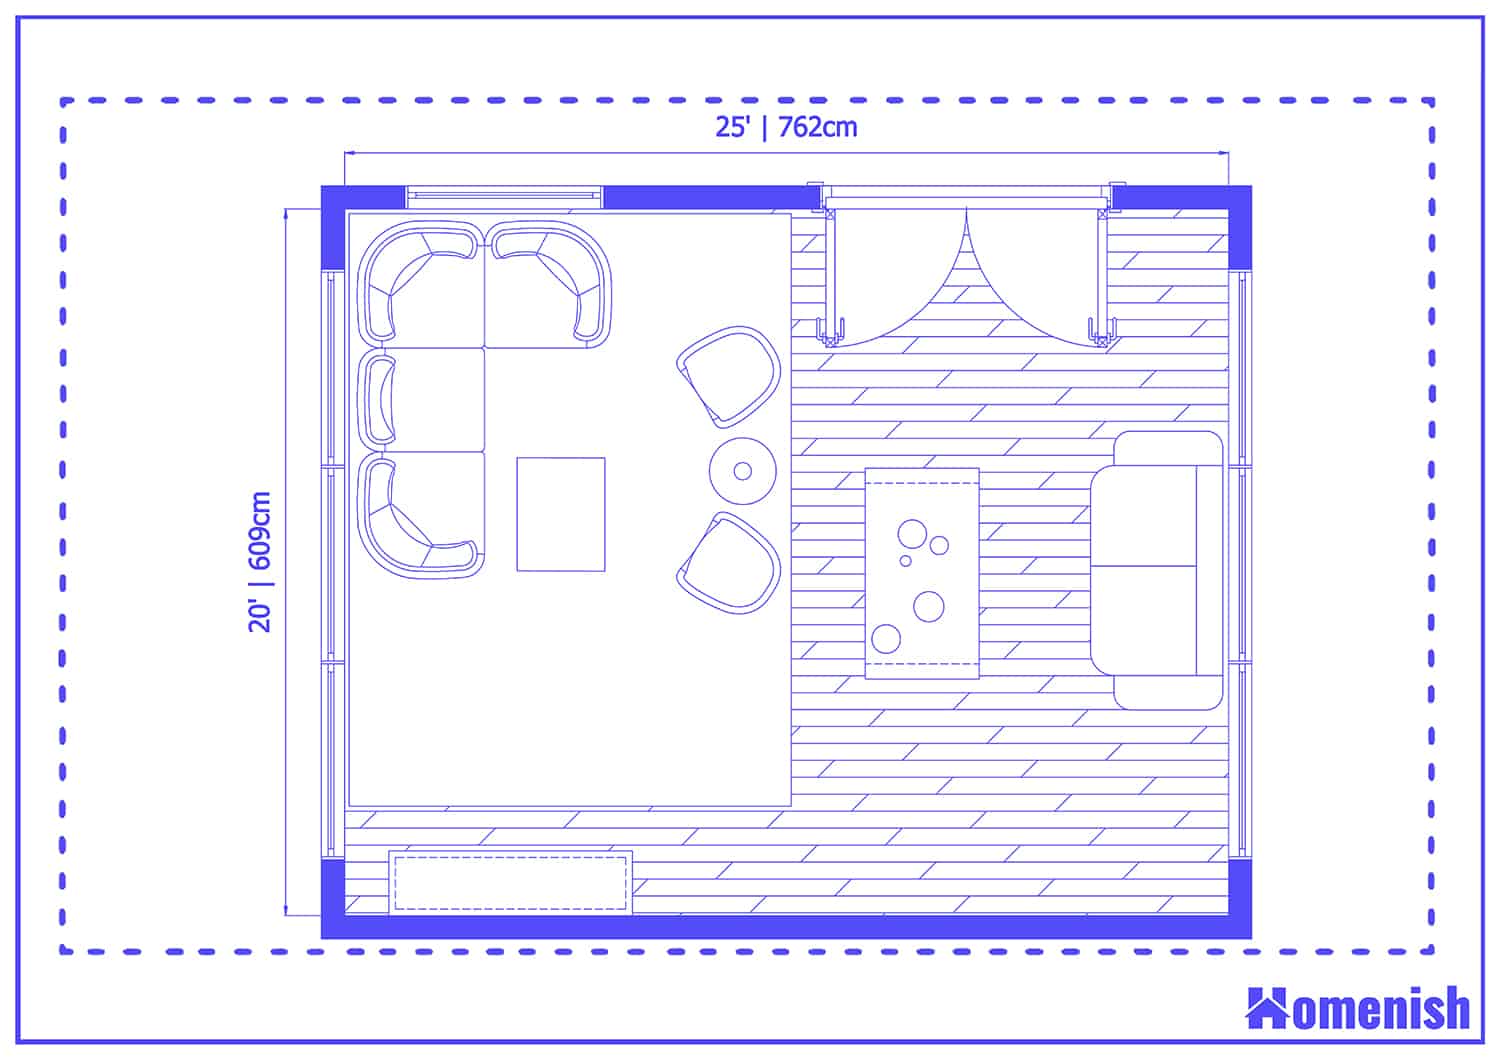 Multi-Area Living Room Layout Floor Plan